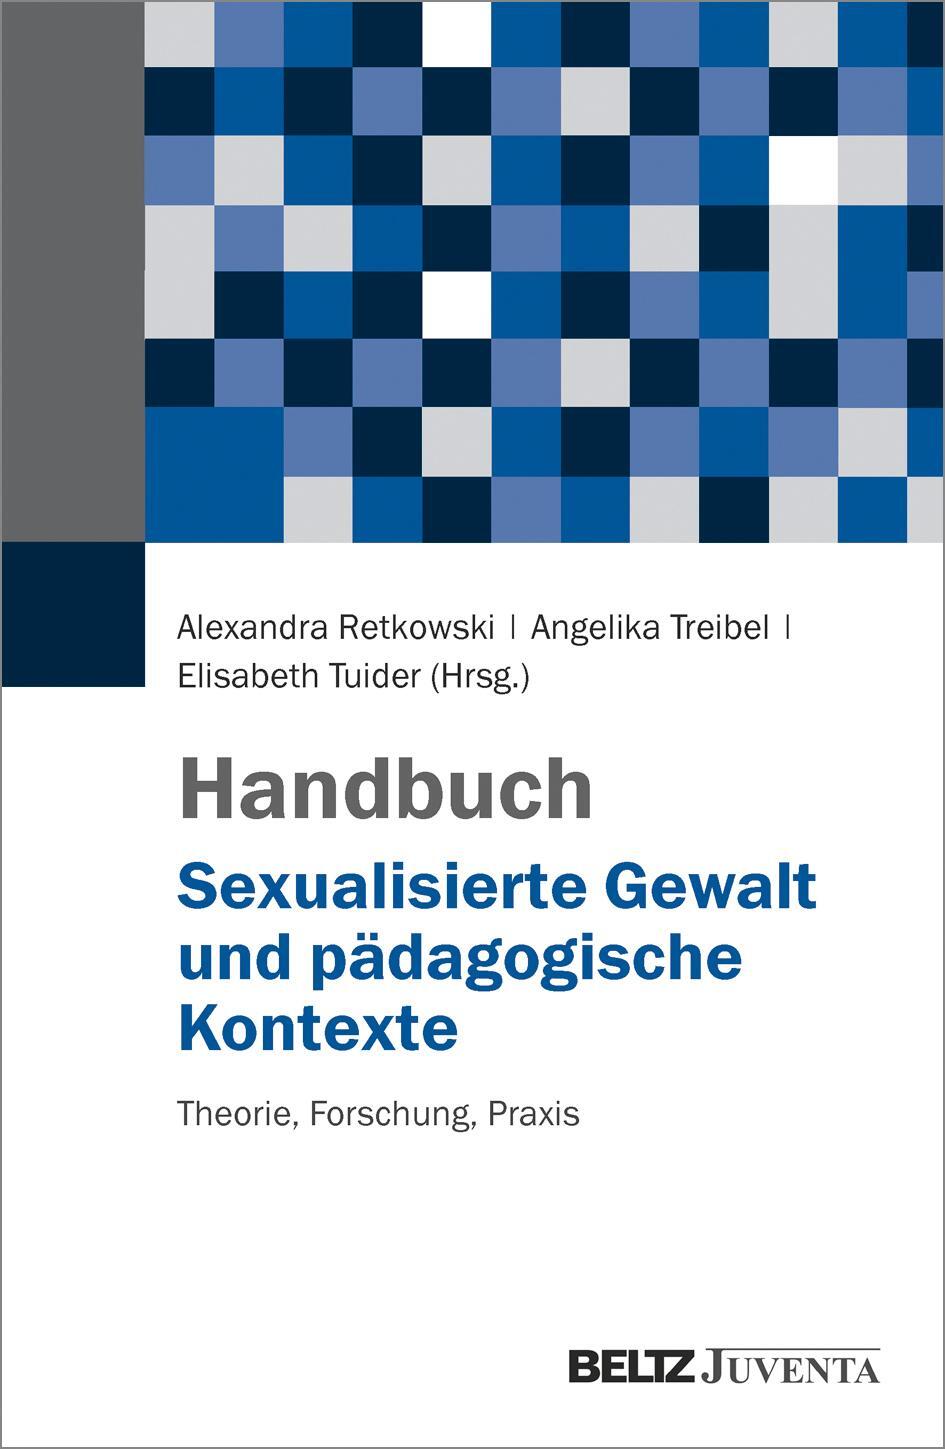 Handbuch Sexualisierte Gewalt und pädagogische Kontexte - Retkowski, Alexandra